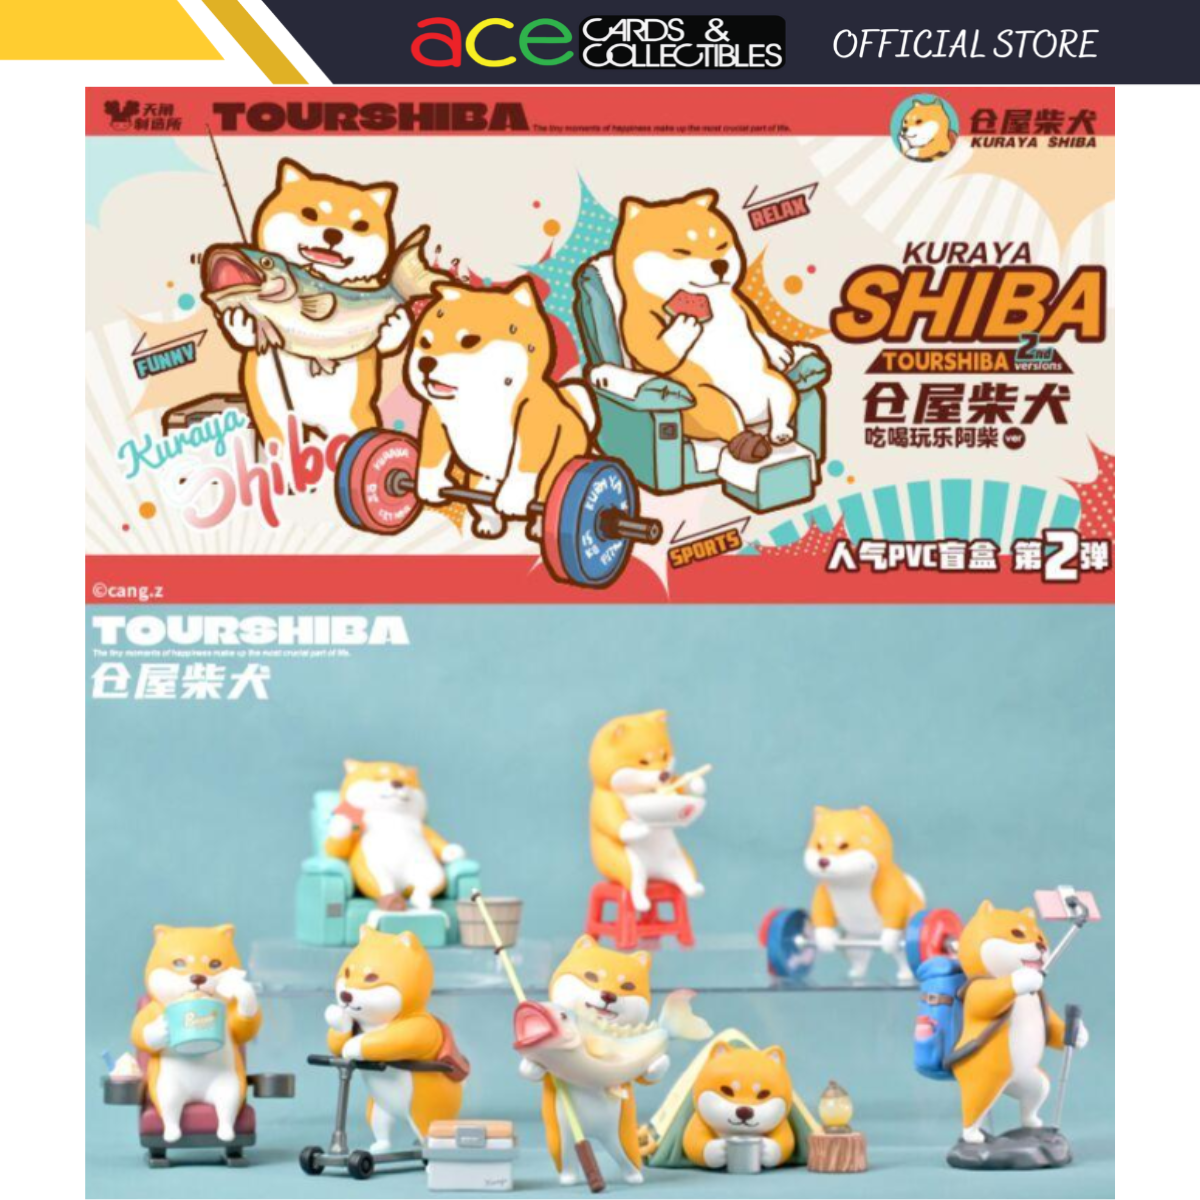 Guraya Shiba x Tourshiba 2nd Version Series-Single Box (Random)-Guraya Shiba-Ace Cards & Collectibles